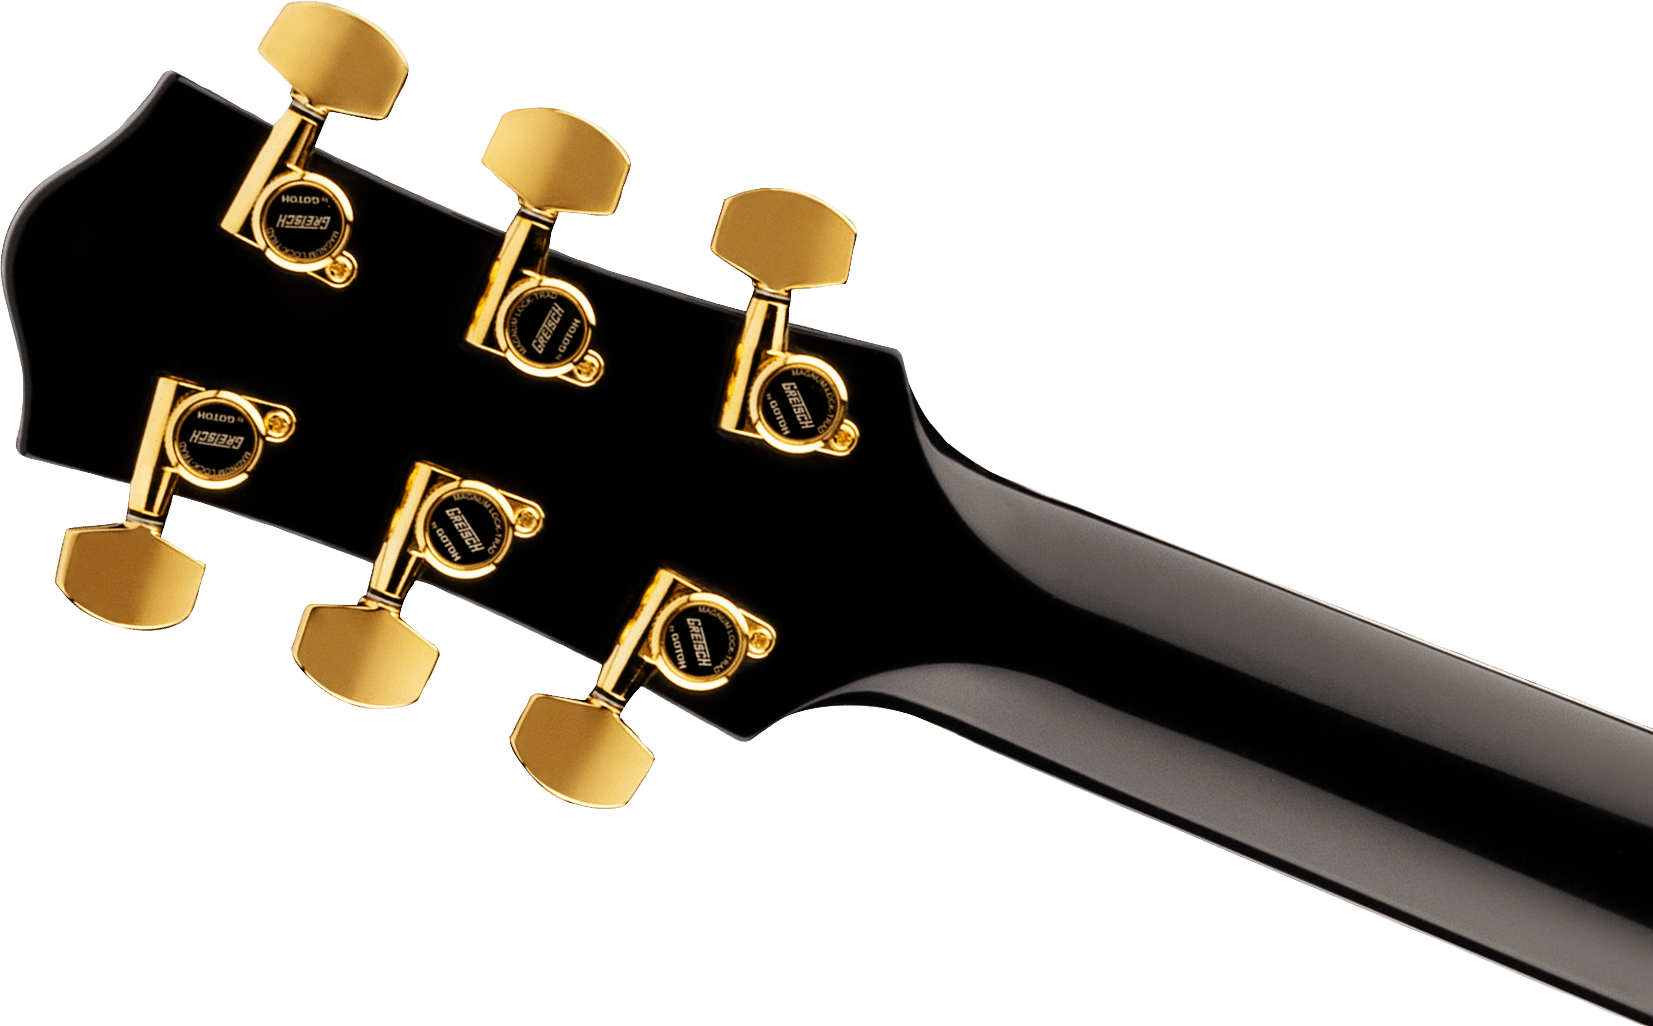 Gretsch G6229tg Jet Bt Players Edition Pro Jap 2h Trem Bigsby Rw - Ocean Turquoise Sparkle - Enkel gesneden elektrische gitaar - Variation 3